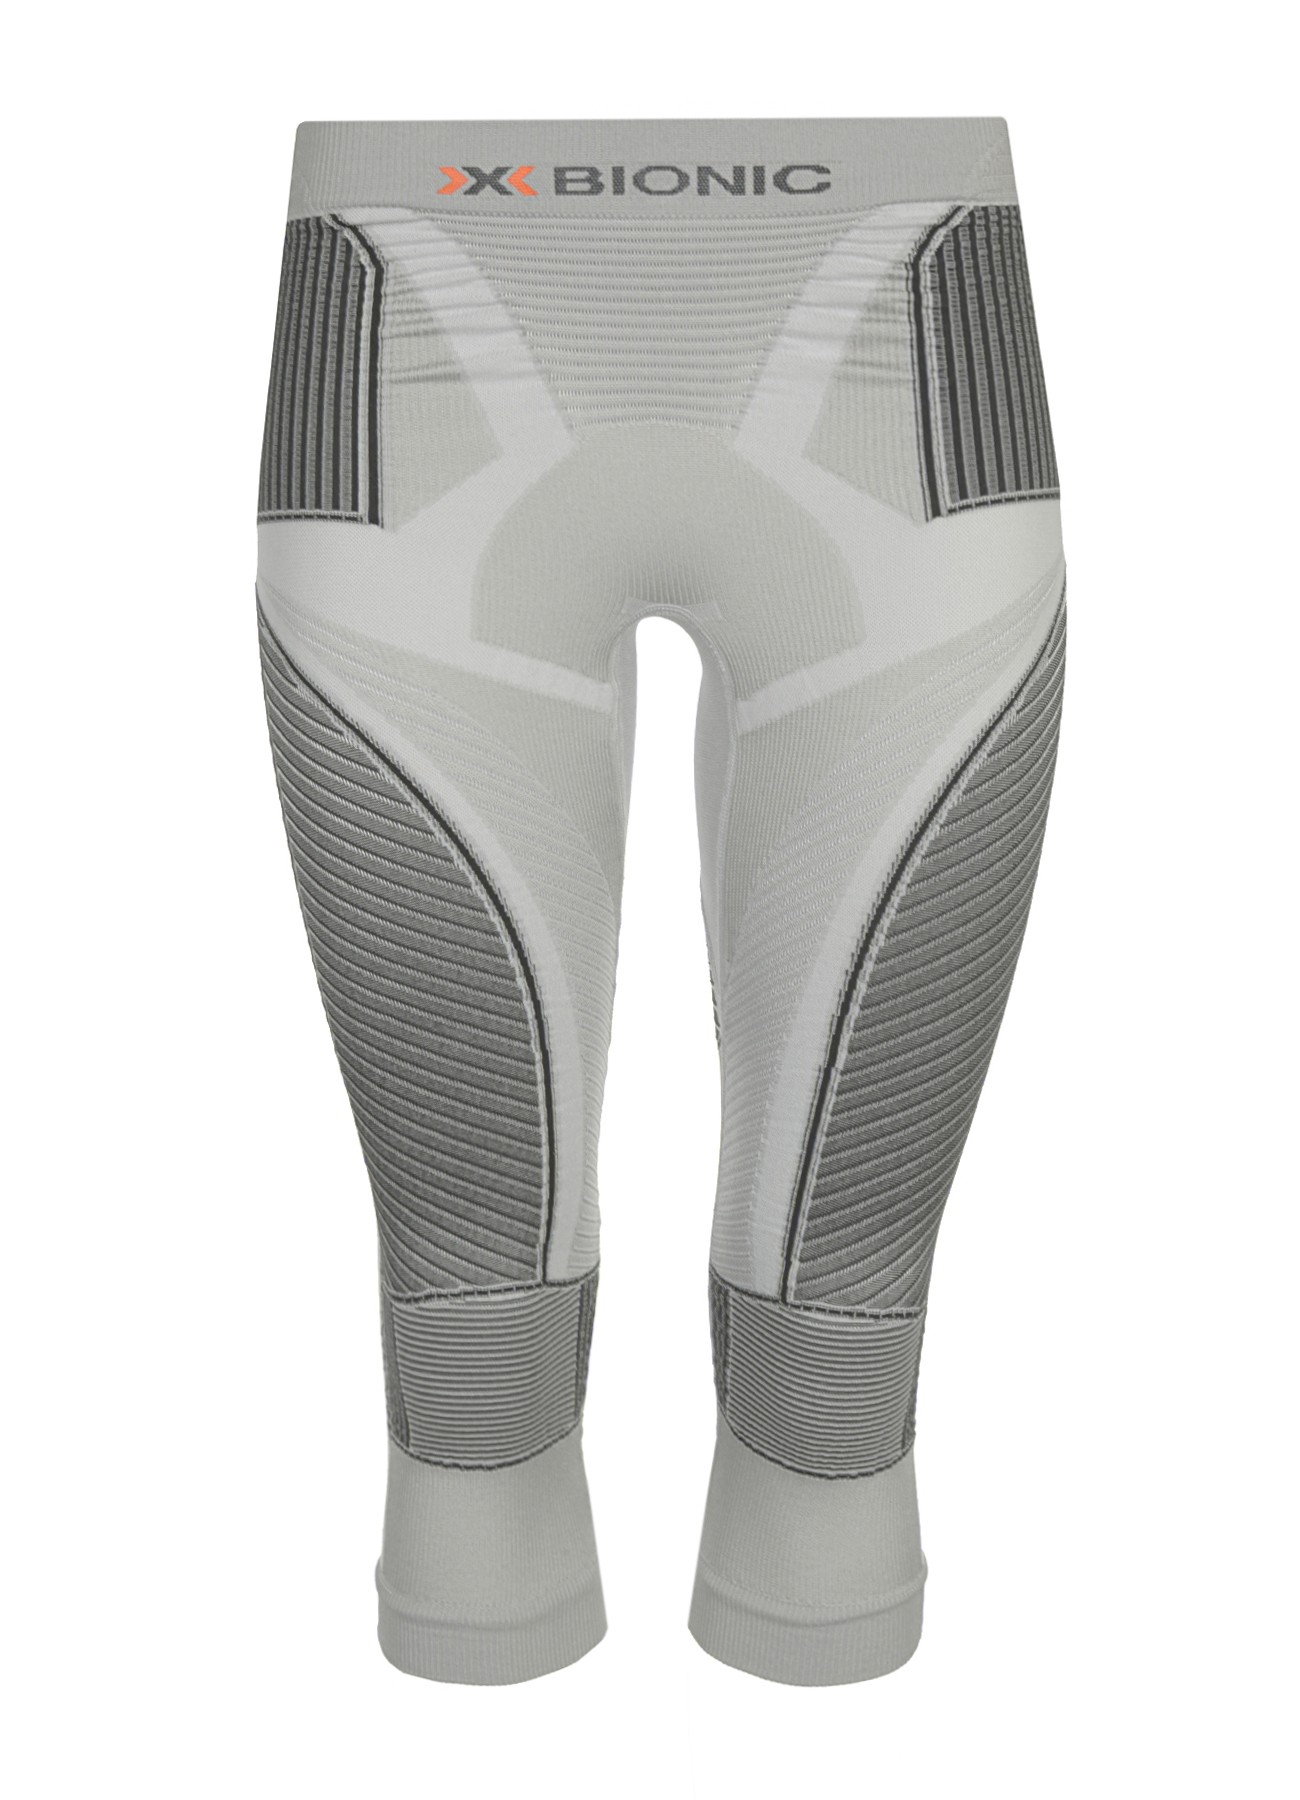 Белье: термобриджи женские Pant Med Radiactor X-BIONIC для занятий спортом